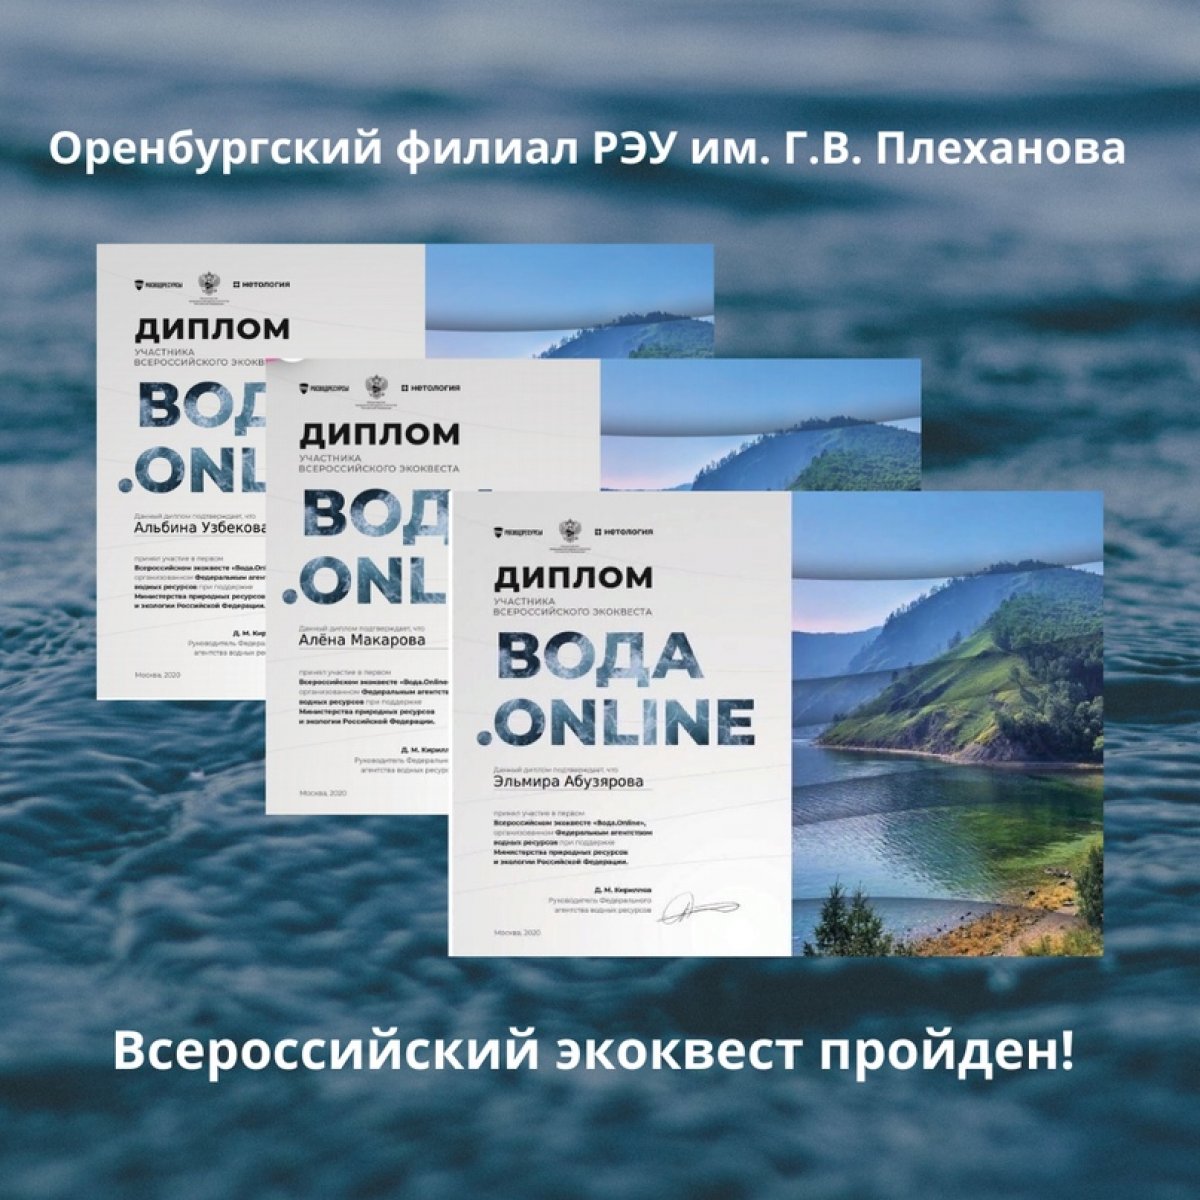 С 1 по 15 октября студенты Оренбургского филиала приняли участие во Всероссийском экоквесте "Вода.Online"